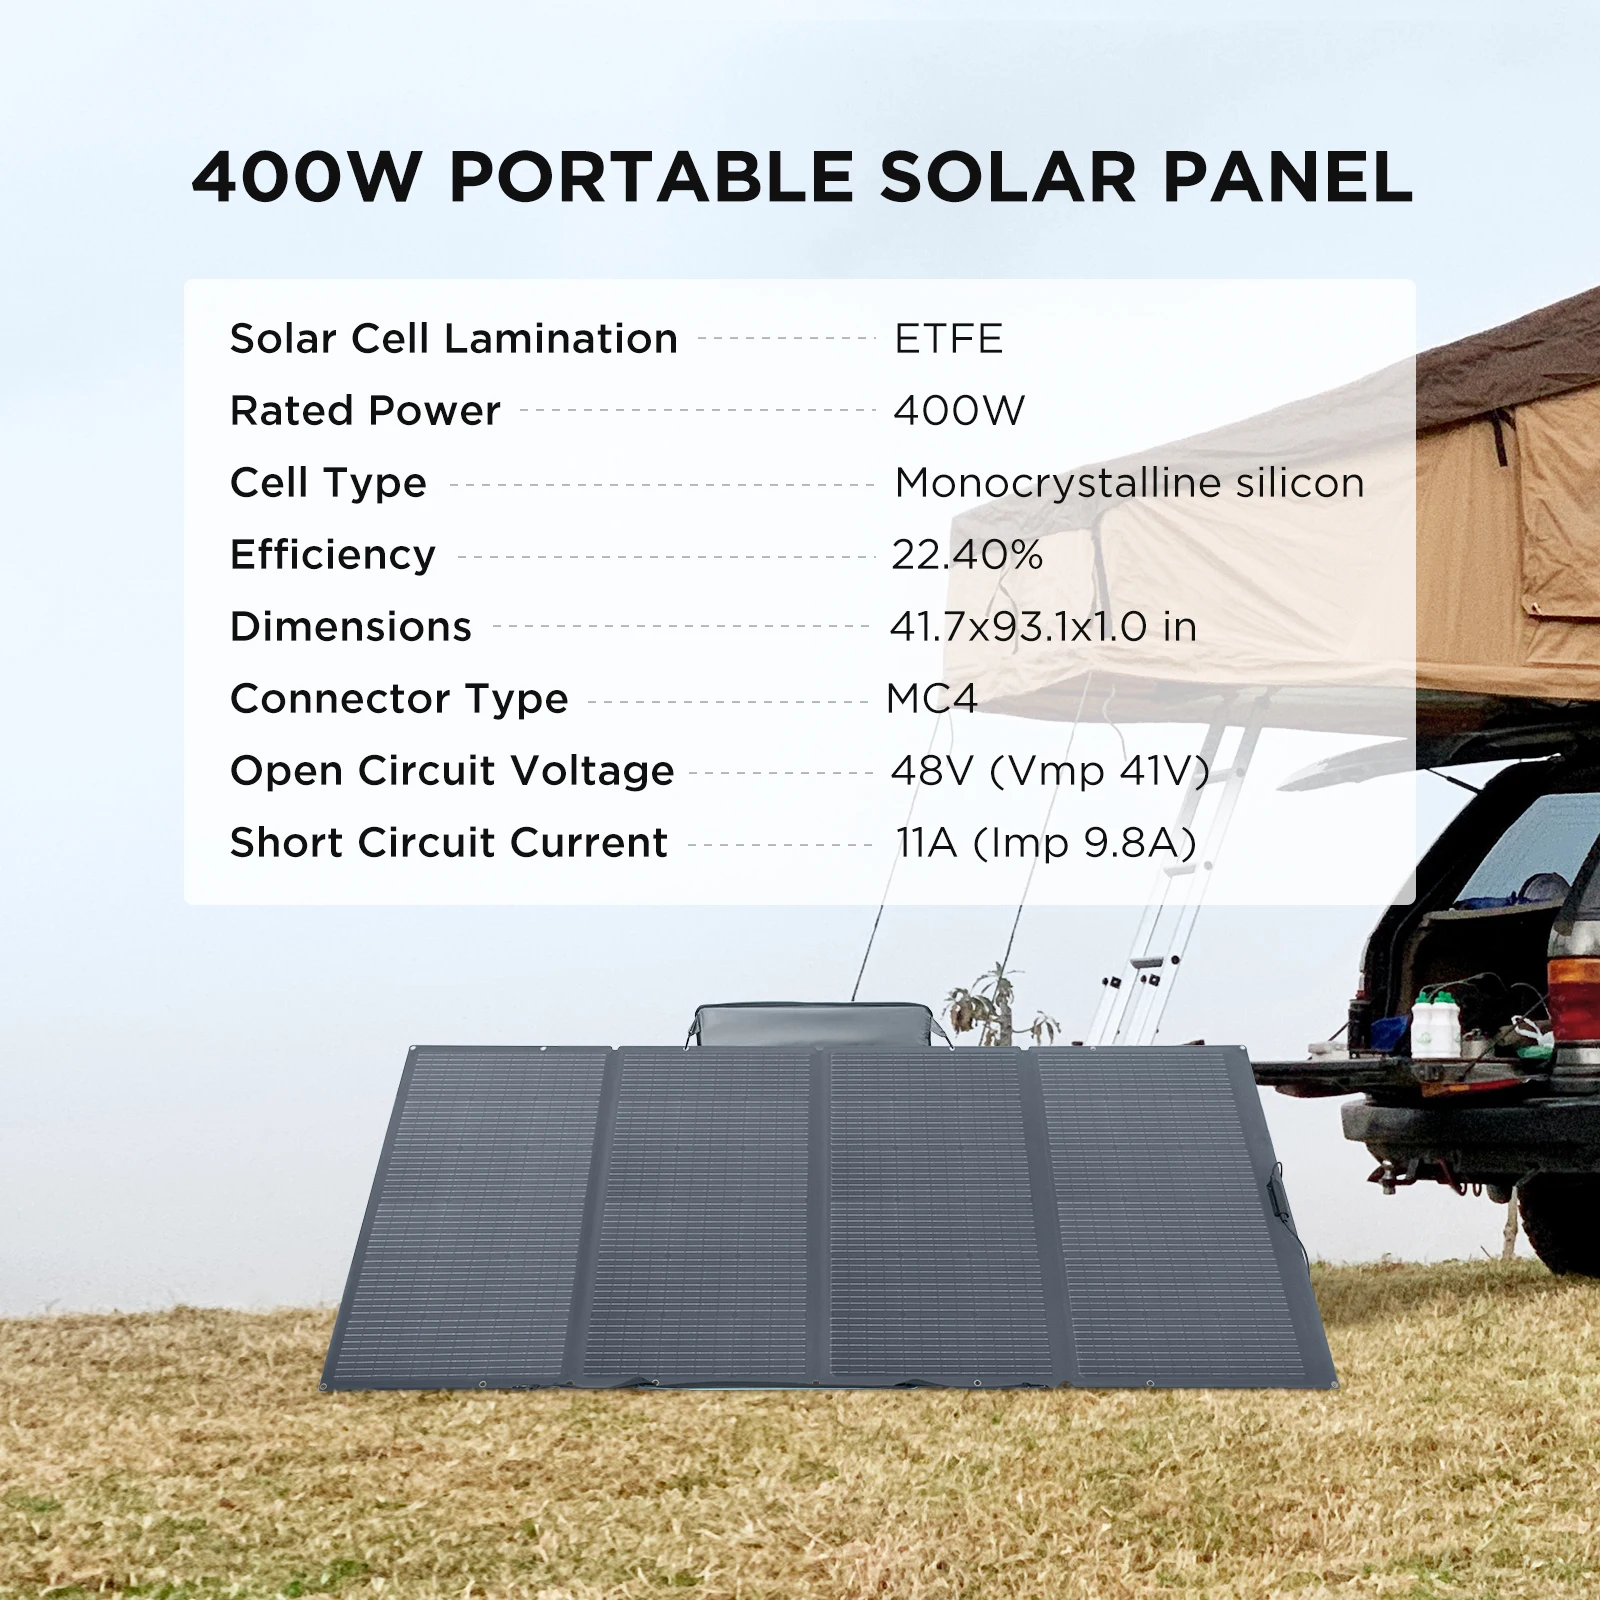 Panneau Solaire EcoFlow 110W : Énergie Solaire Portable Optimisée